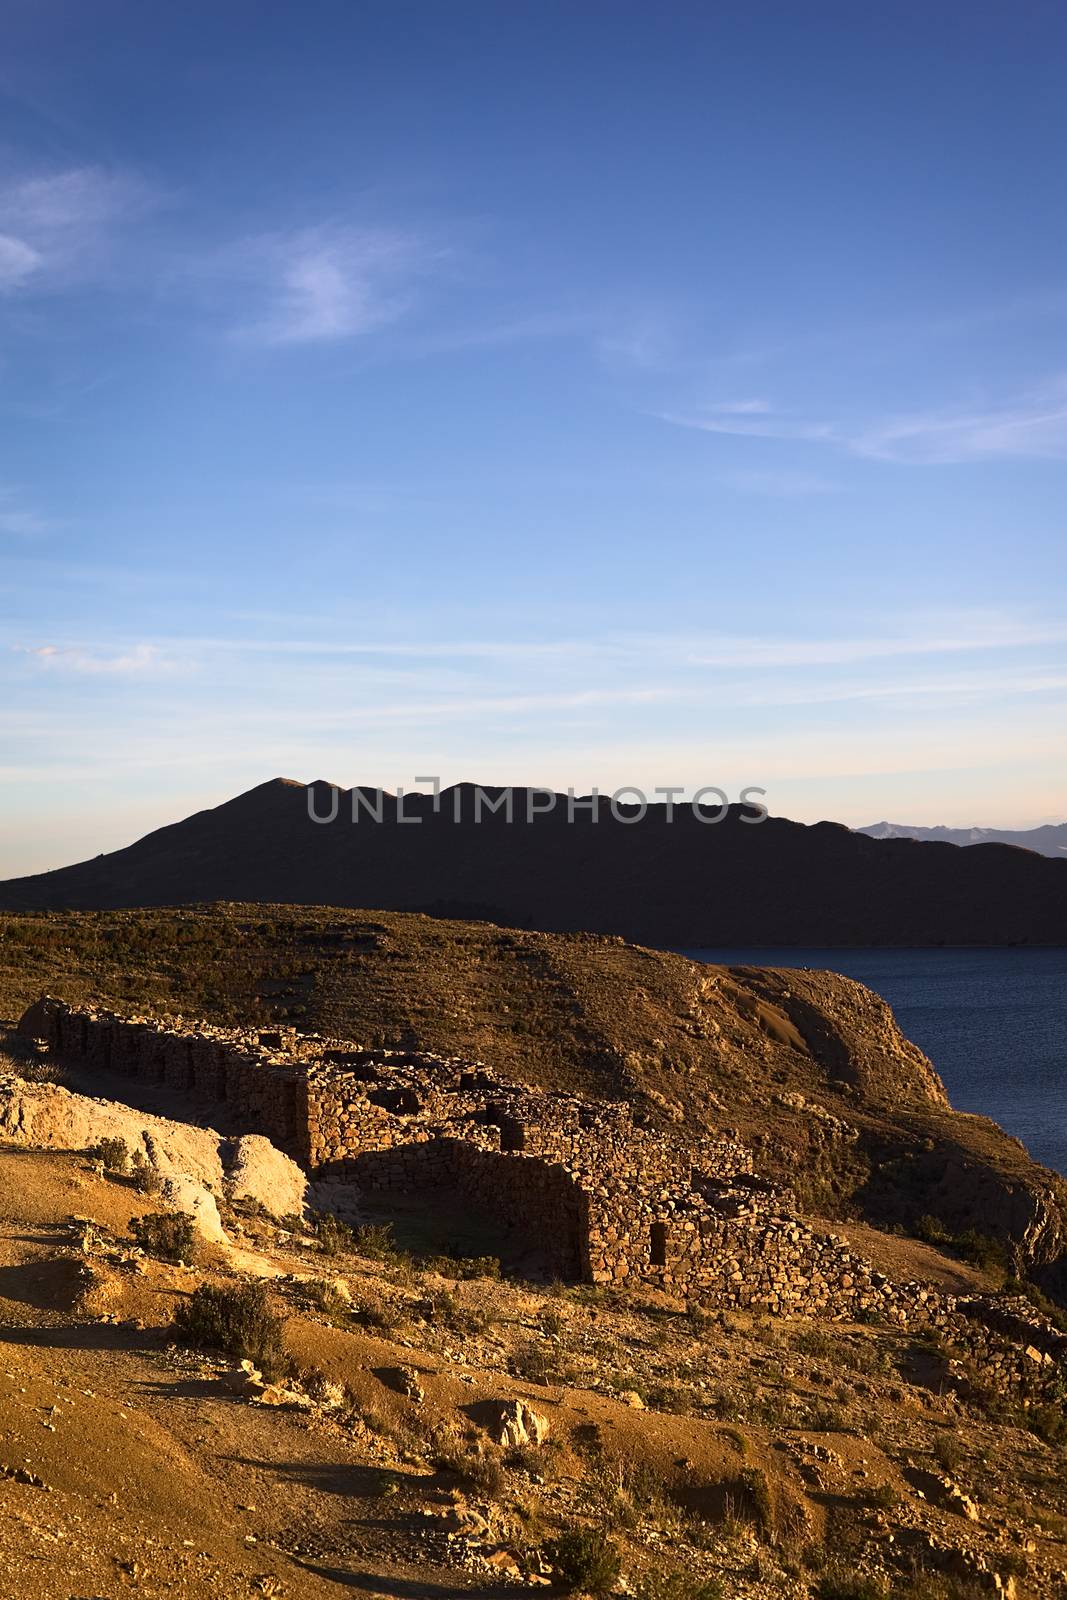 Chinkana Ruins on Isla del Sol (Island of the Sun) in Lake Titicaca, Bolivia by sven